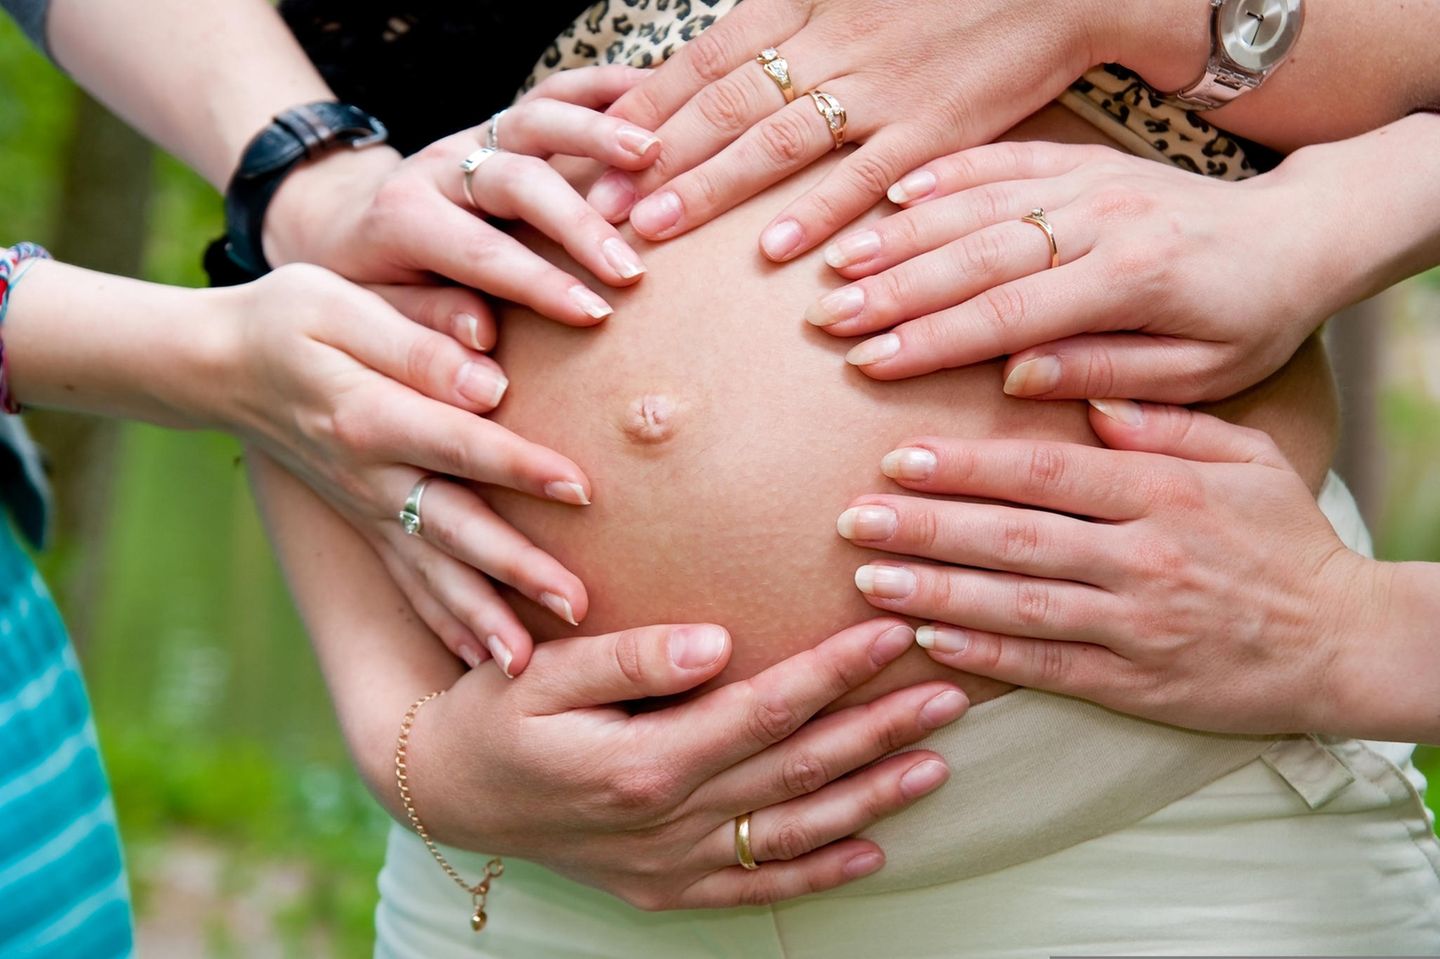 Babybauch anfassen? Die schwangere Frau sollte vorher unbedingt gefragt werden!